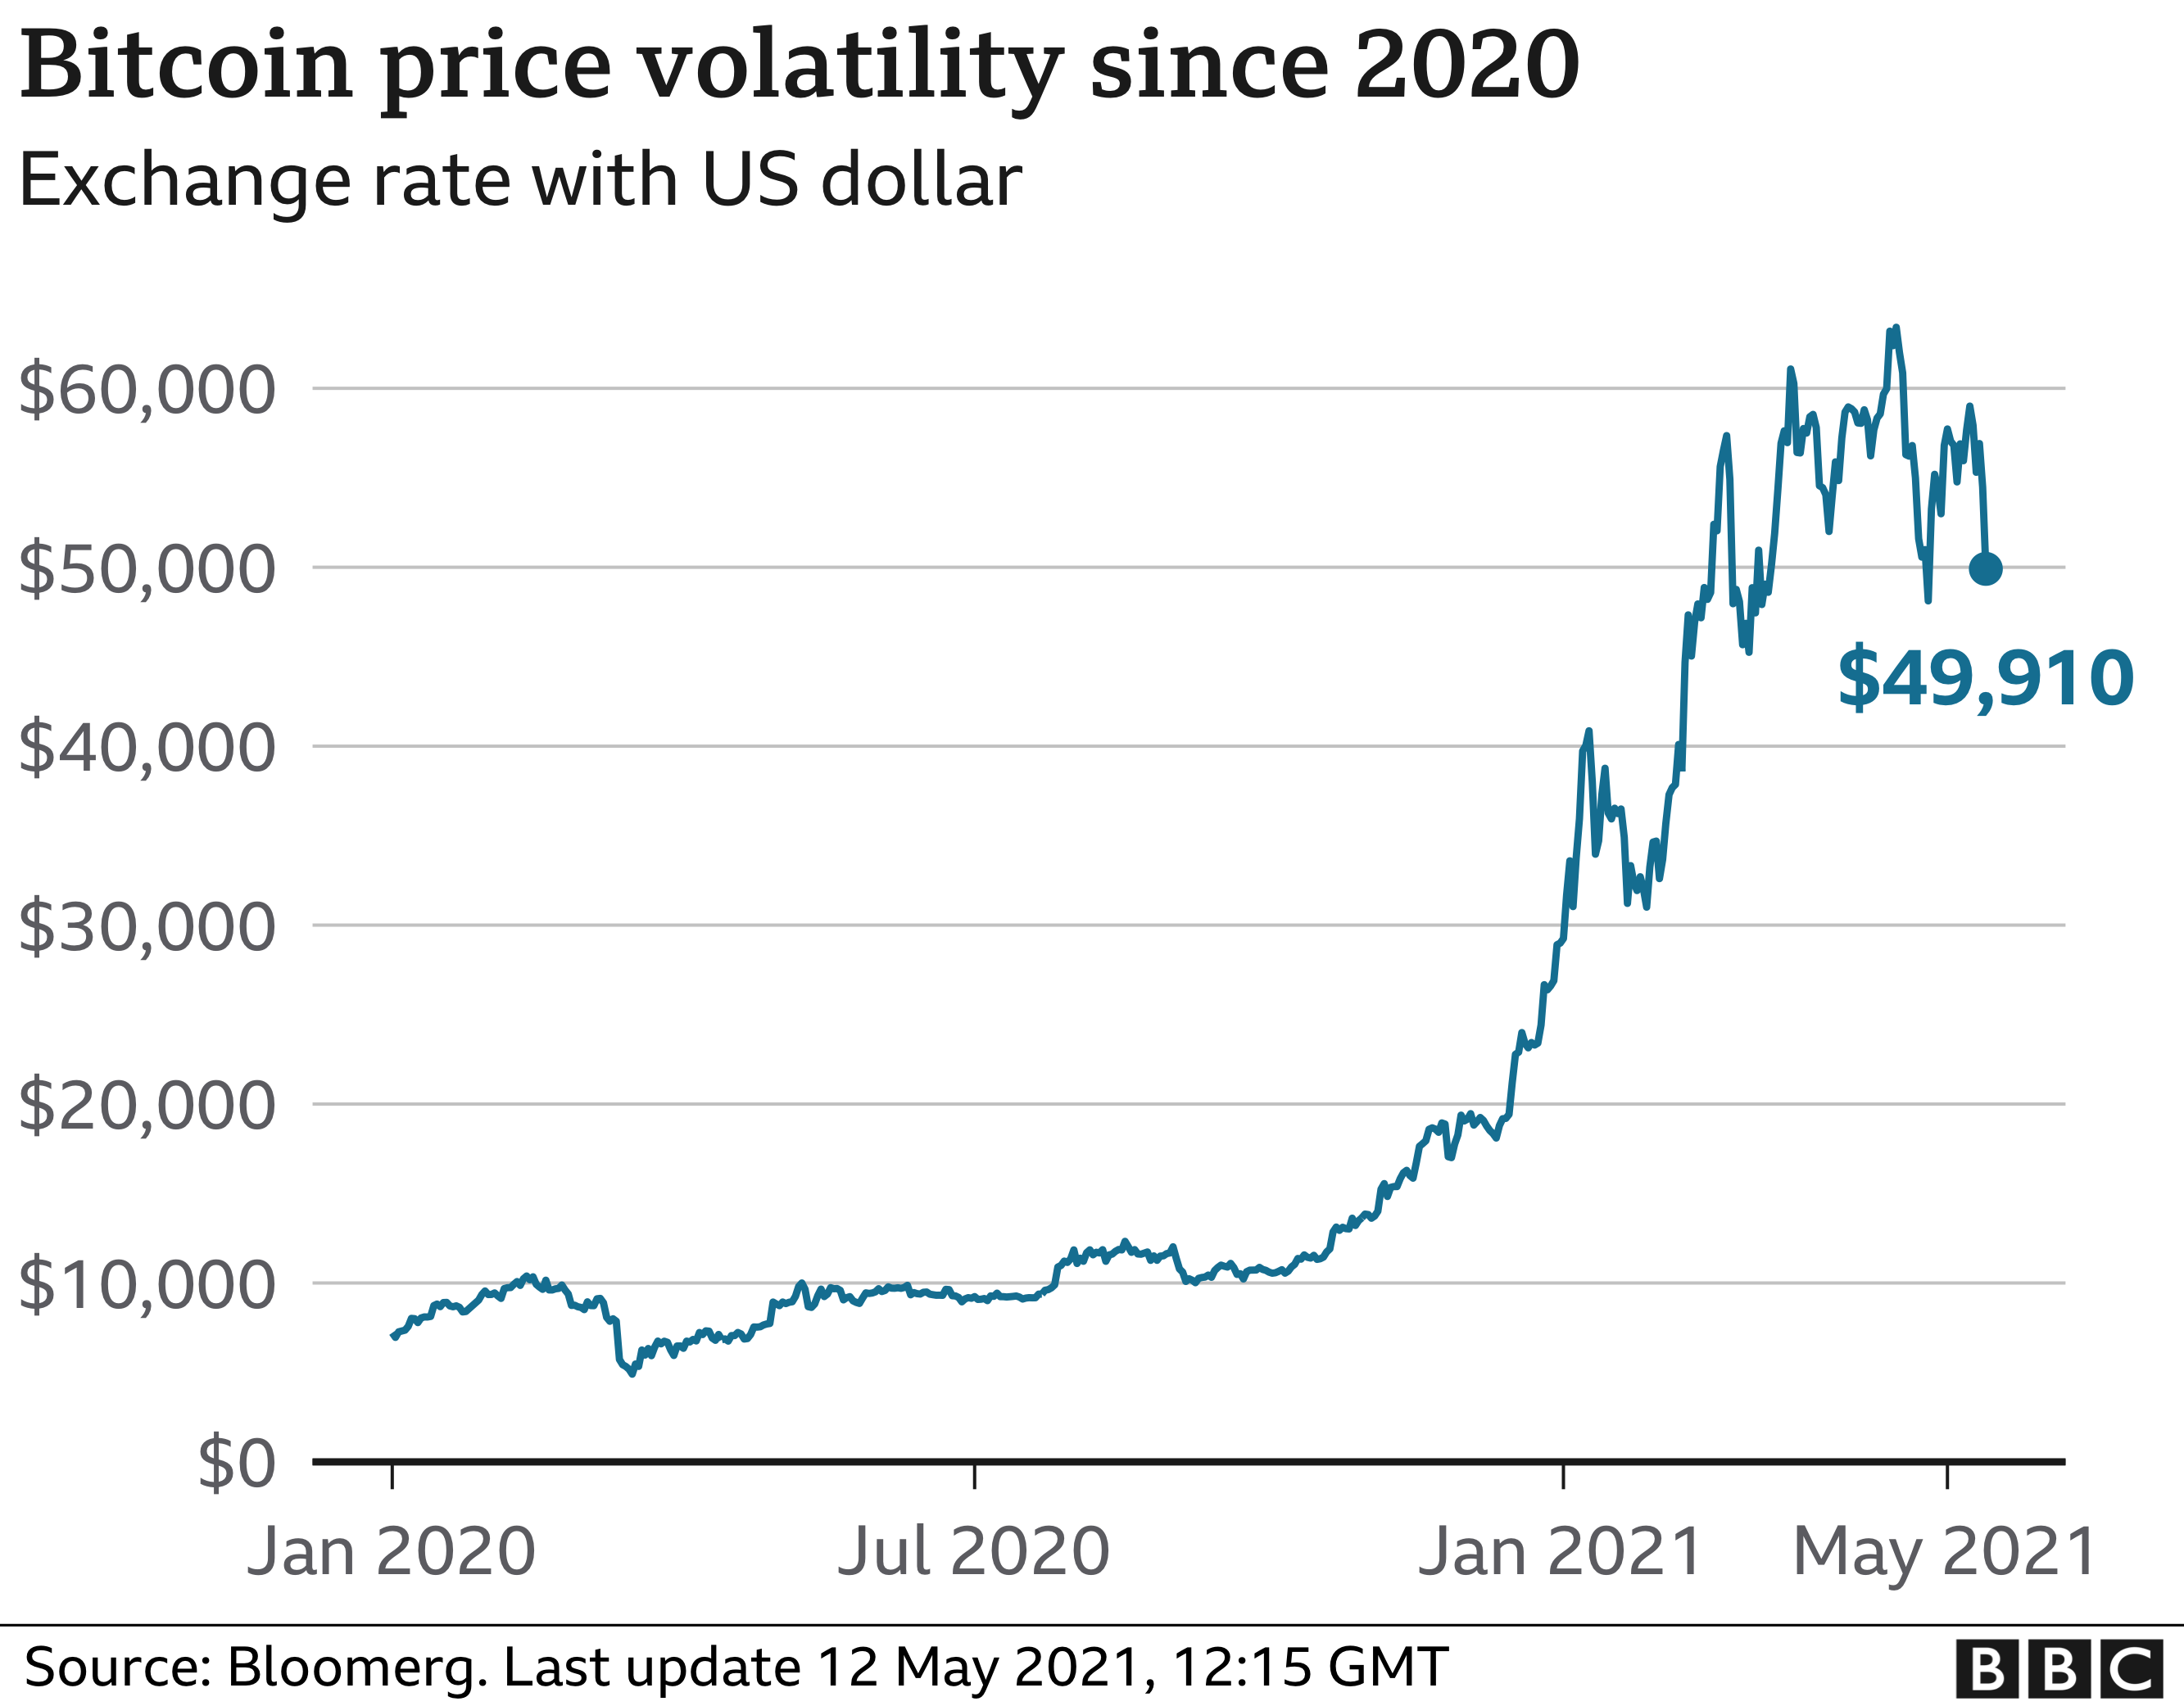 Bitcoin volatilidade dos preços desde 2020. Fonte: BBC News.